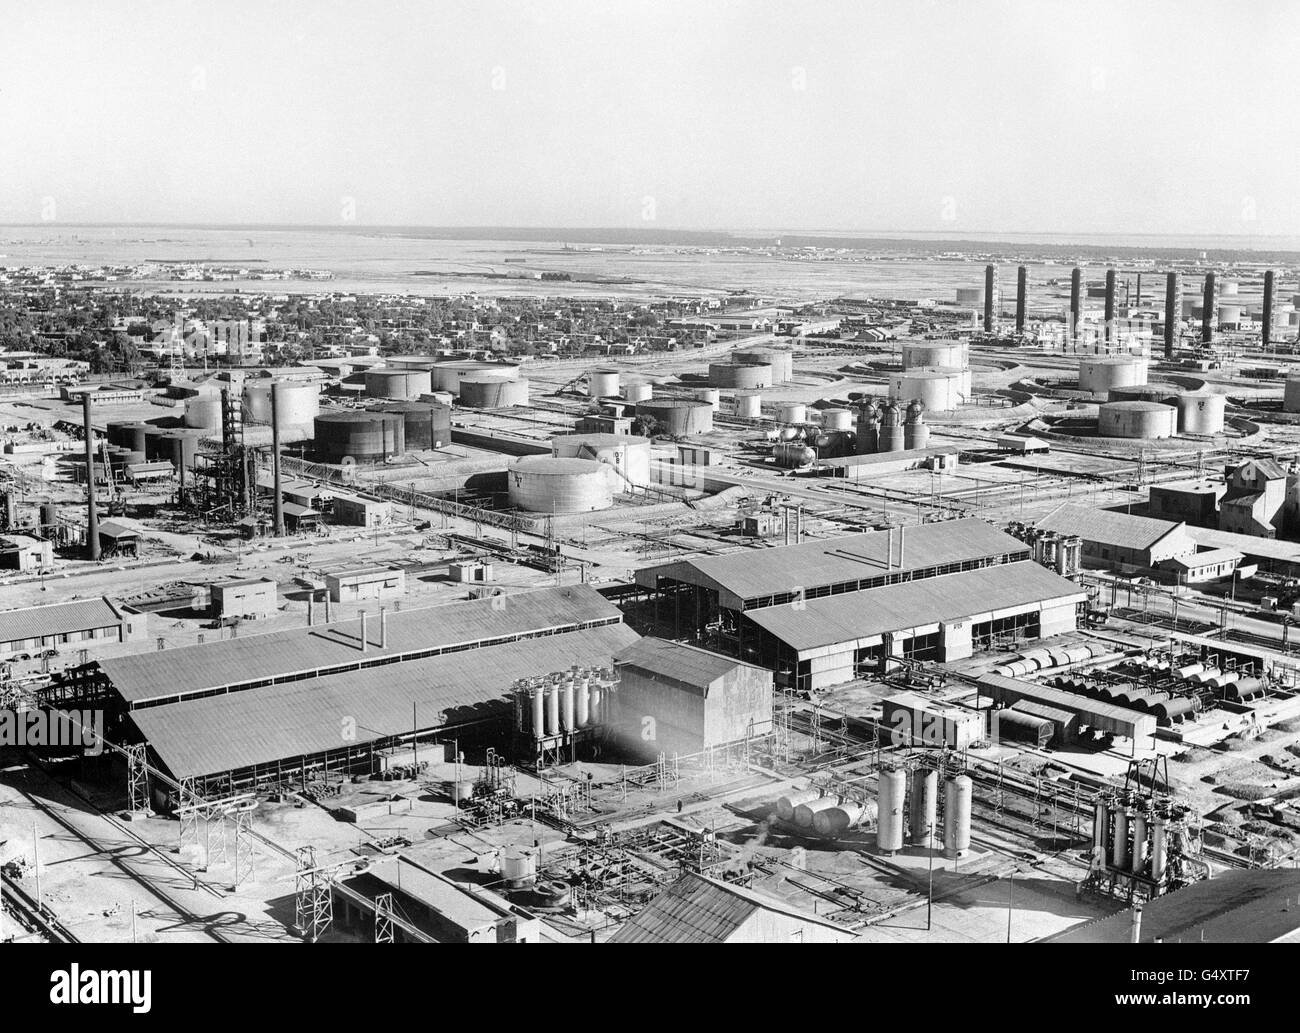 Edificios y Monumentos - refinería de petróleo Abadan - Abadan, Irán. La refinería de petróleo anglo-iraní, la más grande del mundo, en Abadan, Persia, Irán Foto de stock